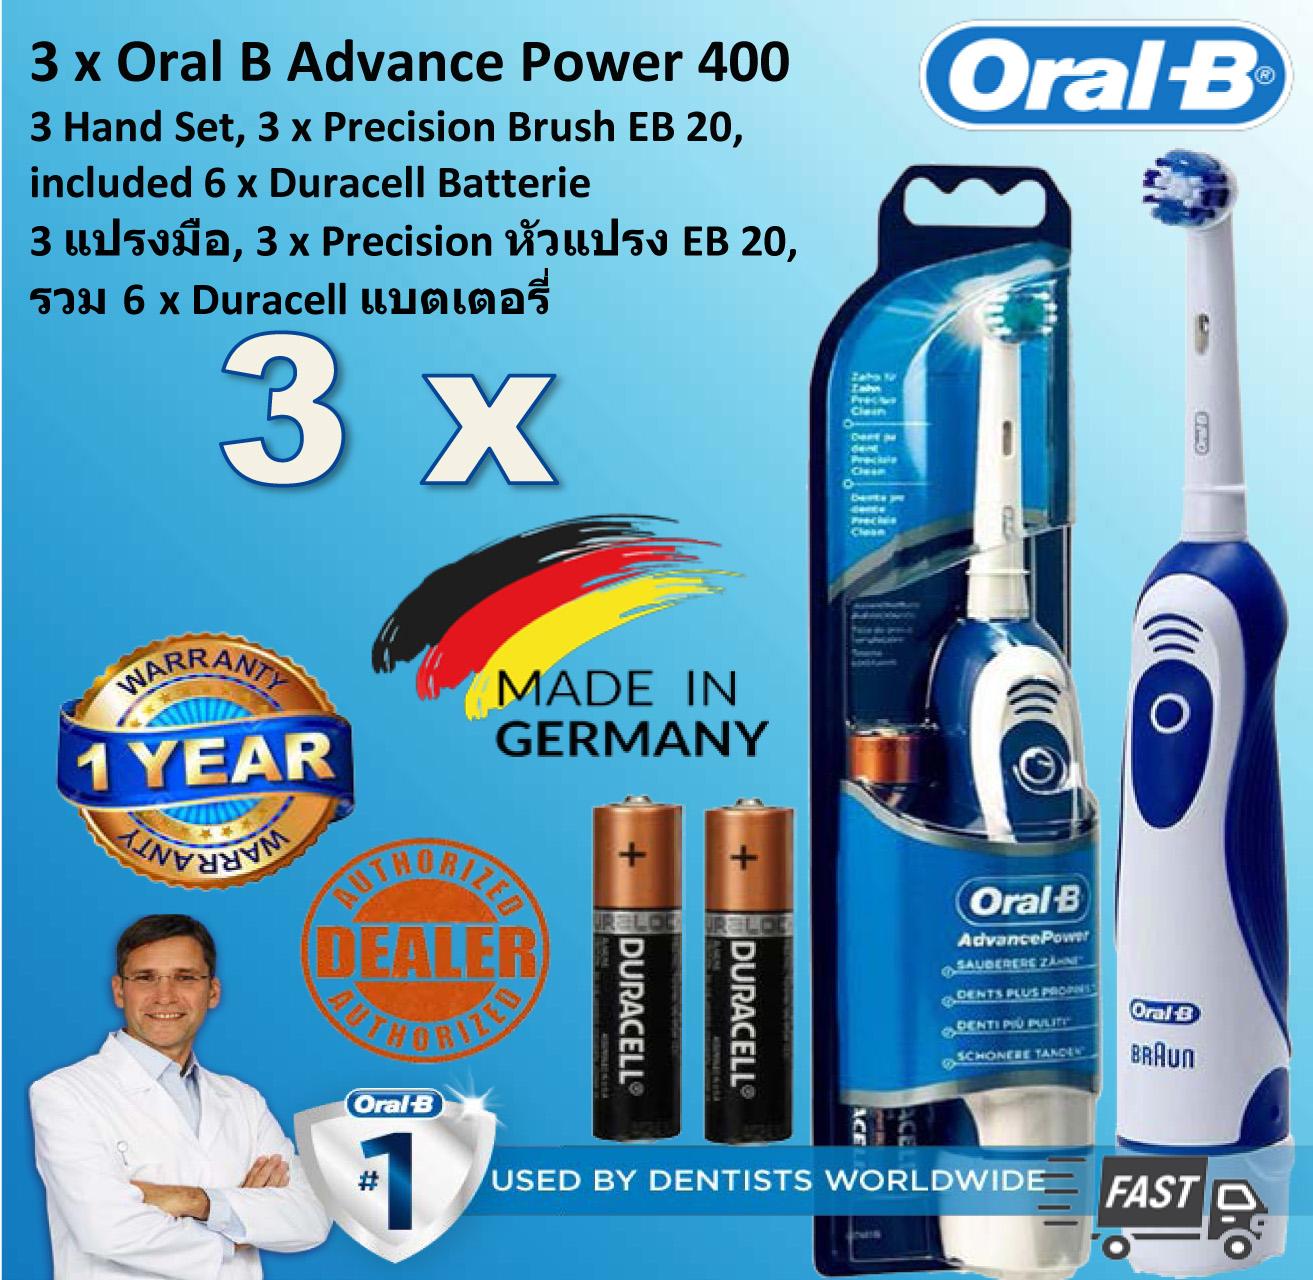  นครปฐม 3 x Oral B แปรงสีฟันไฟฟ้า ออรัล บี Advance Power 400  DB 4010 Battery Powered Electric Toothbrush   3 x  